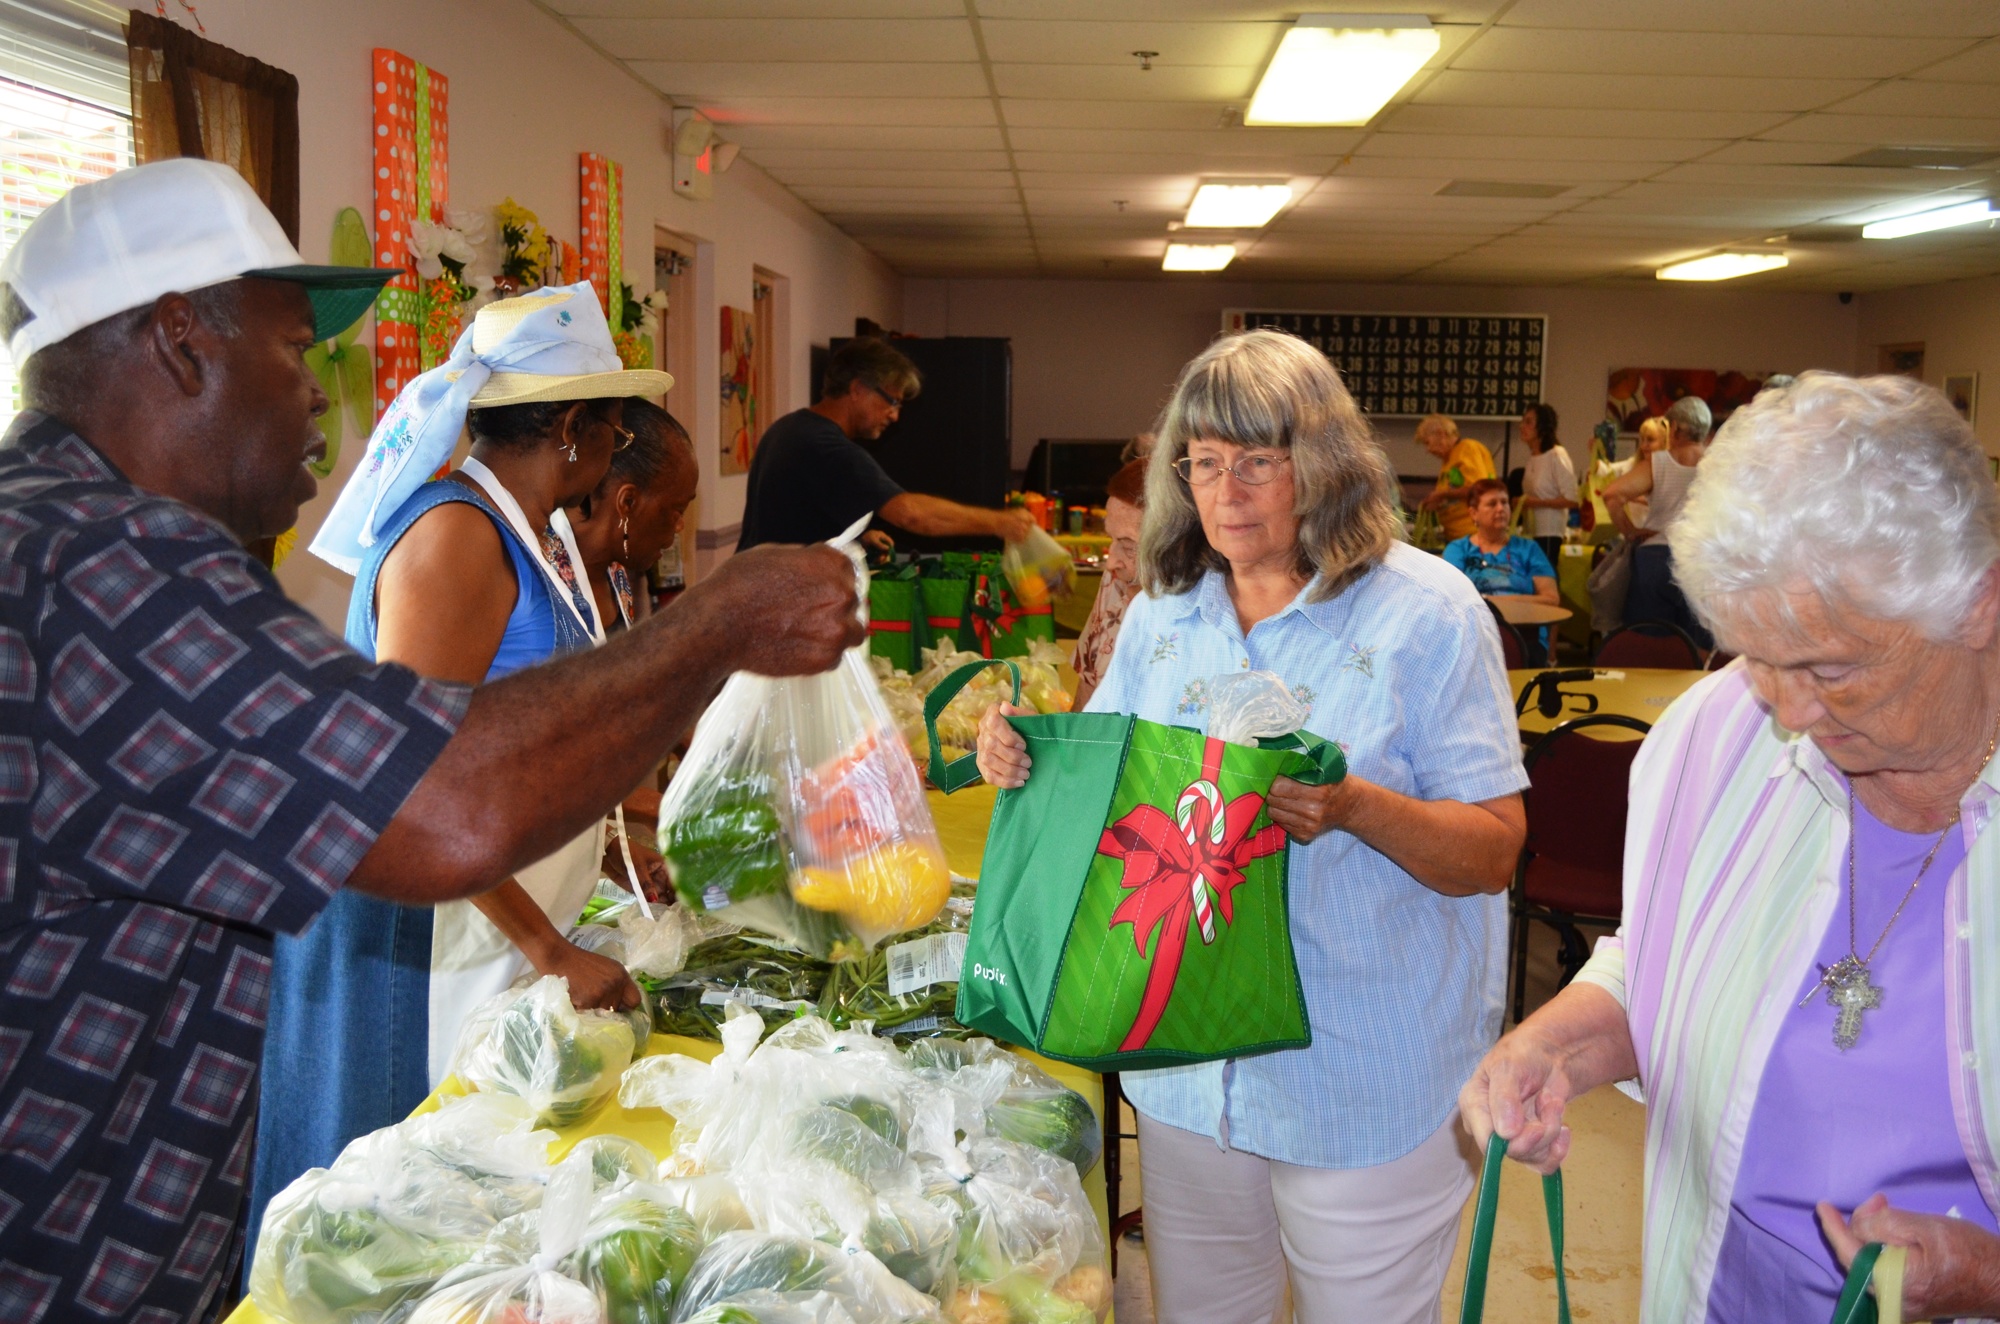 Volunteer Tony Mitchell hands a bag of produce to Janna Shamlaty.